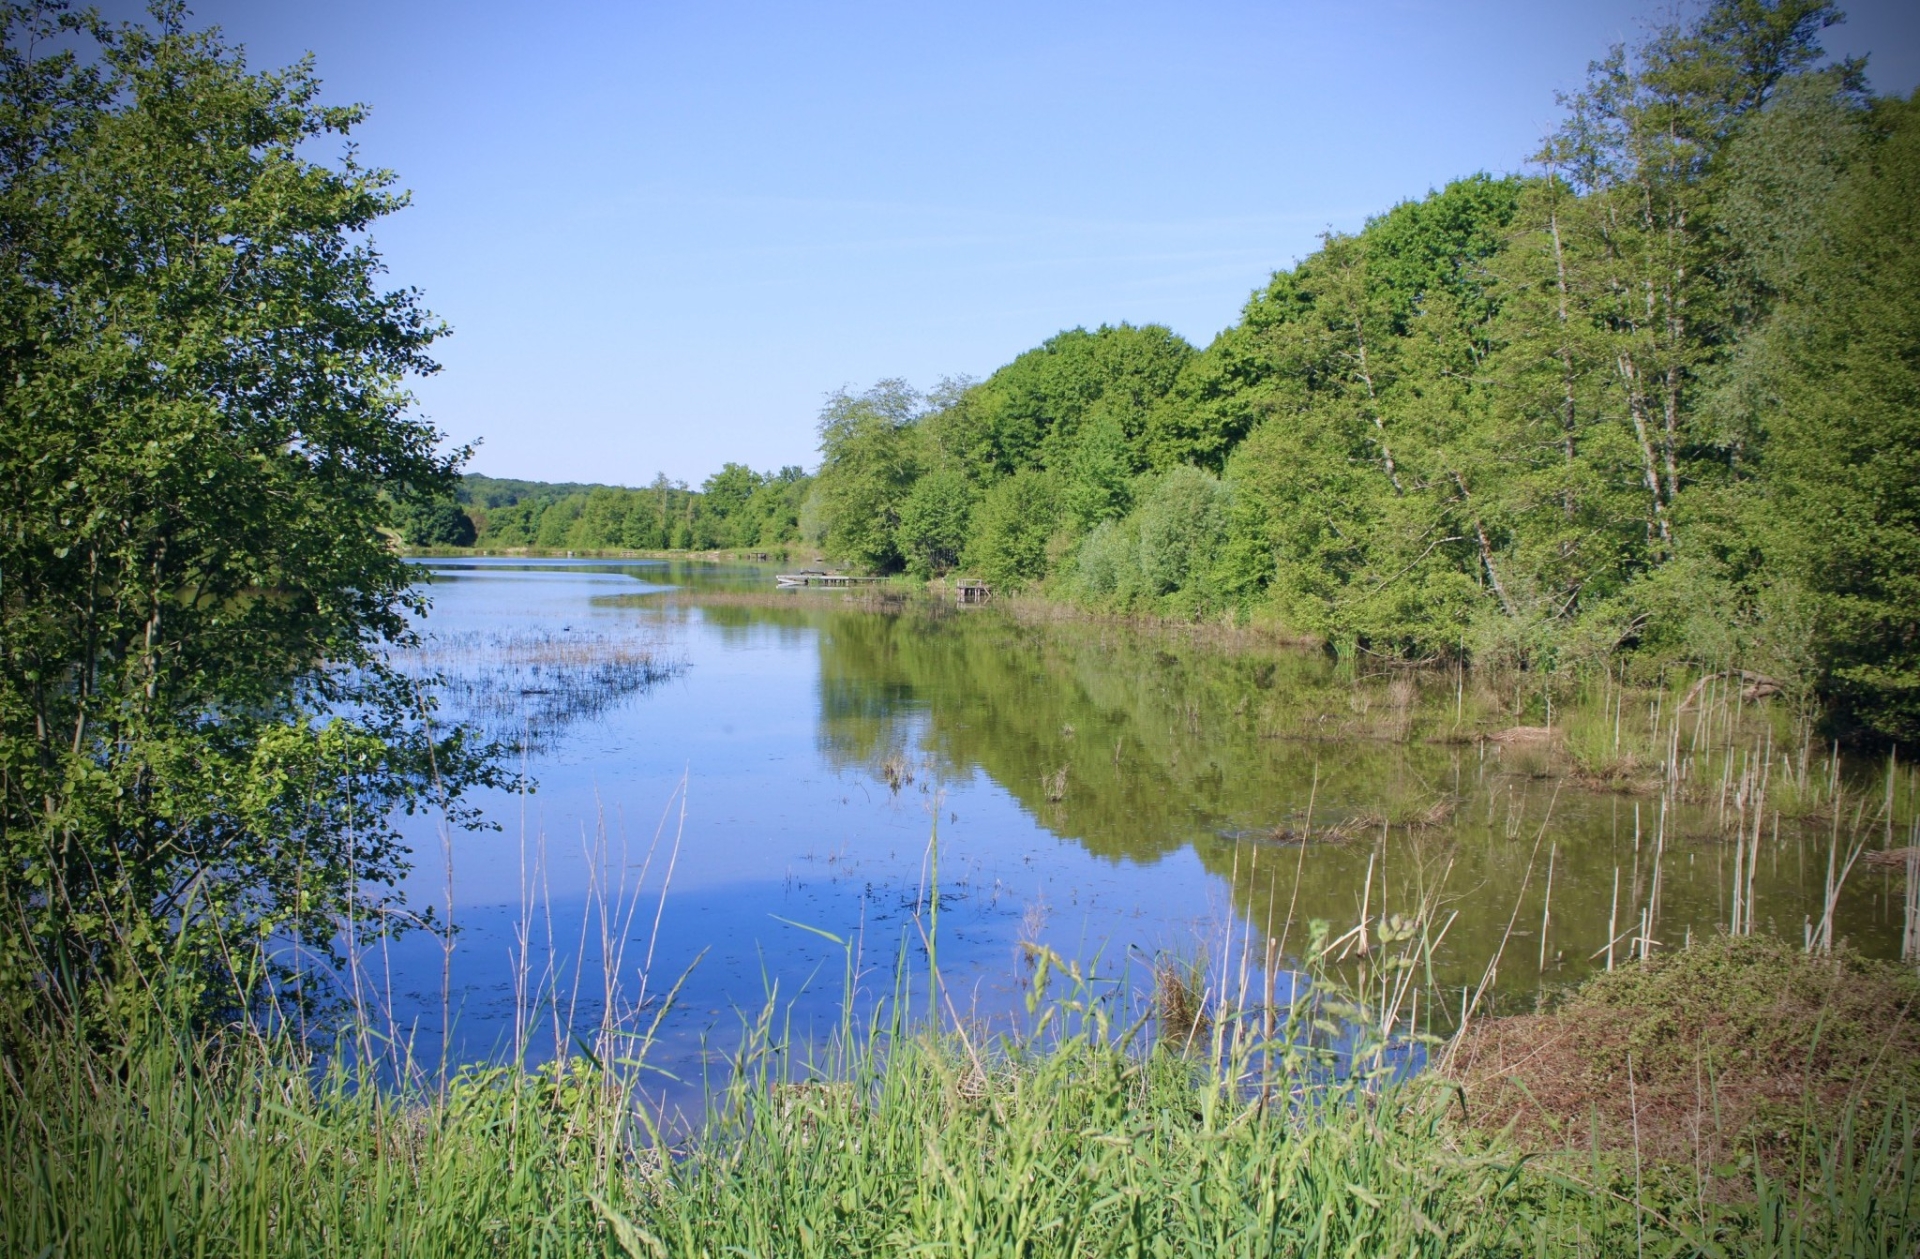 « Les étangs sont une chance pour la nature s’ils sont bien gérés  »